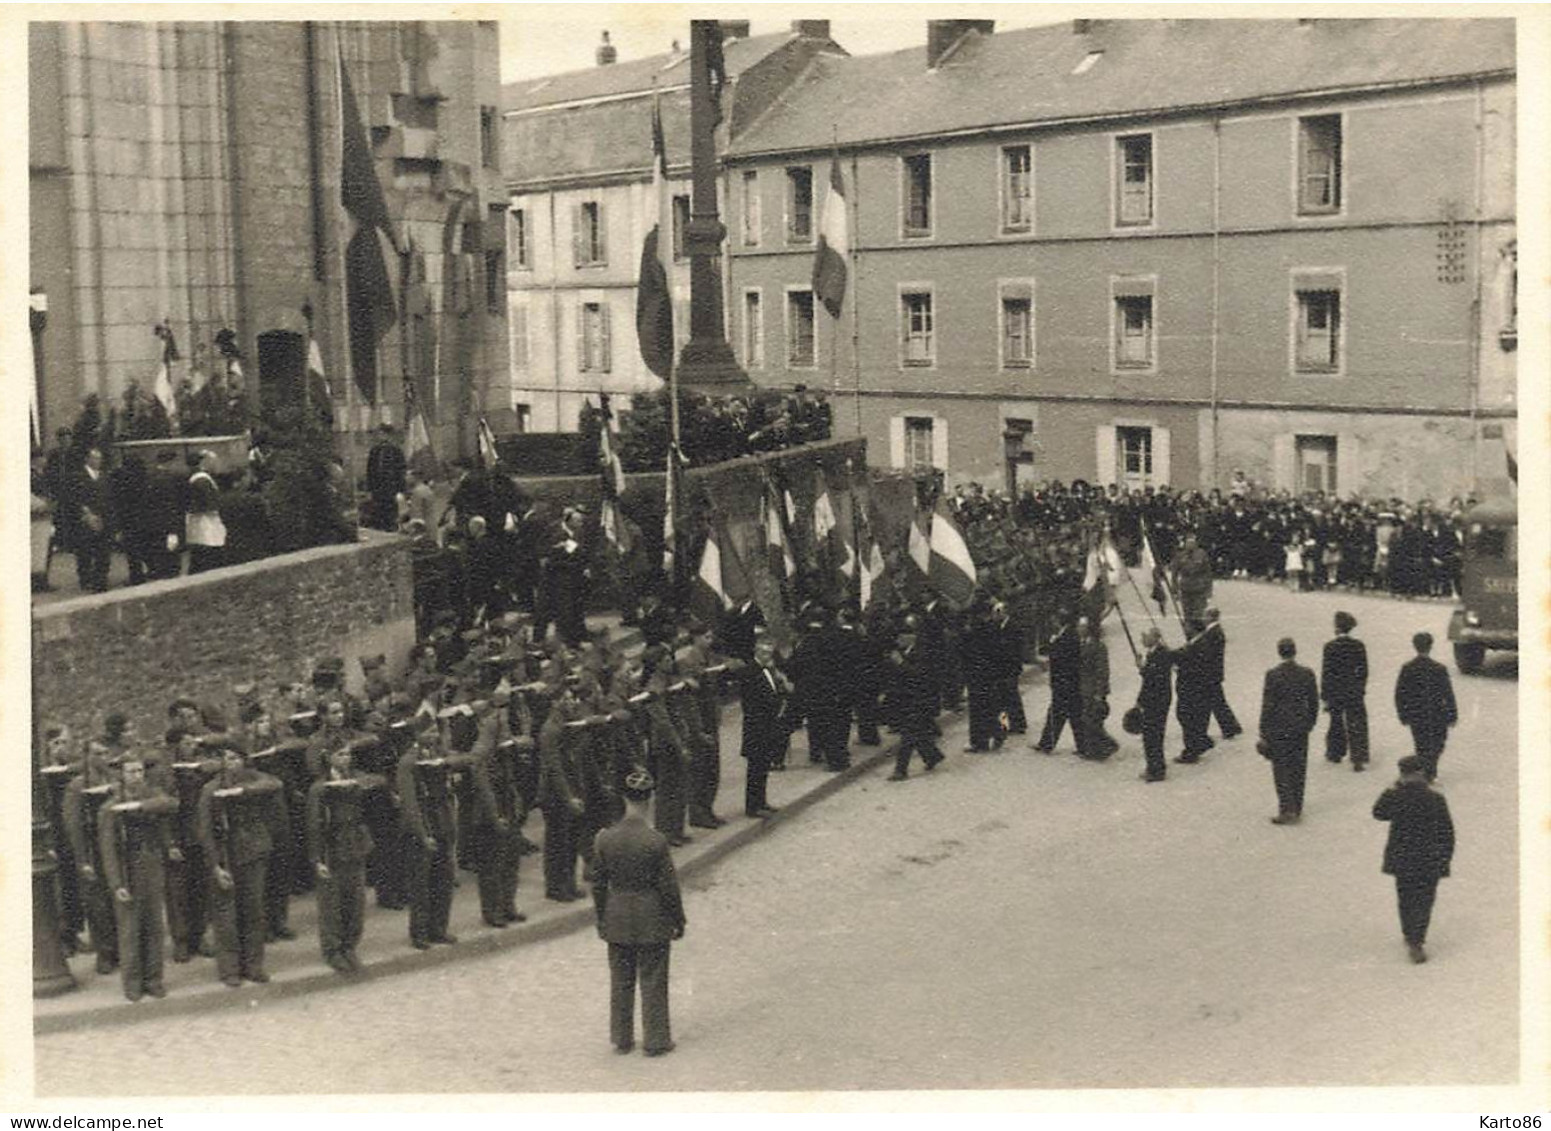 Nantes * RARE 5 Photos * Obsèques Otages Fusillés Par Allemands 1945 * WW2 Place St Similien * 11.5x8.5cm - Nantes